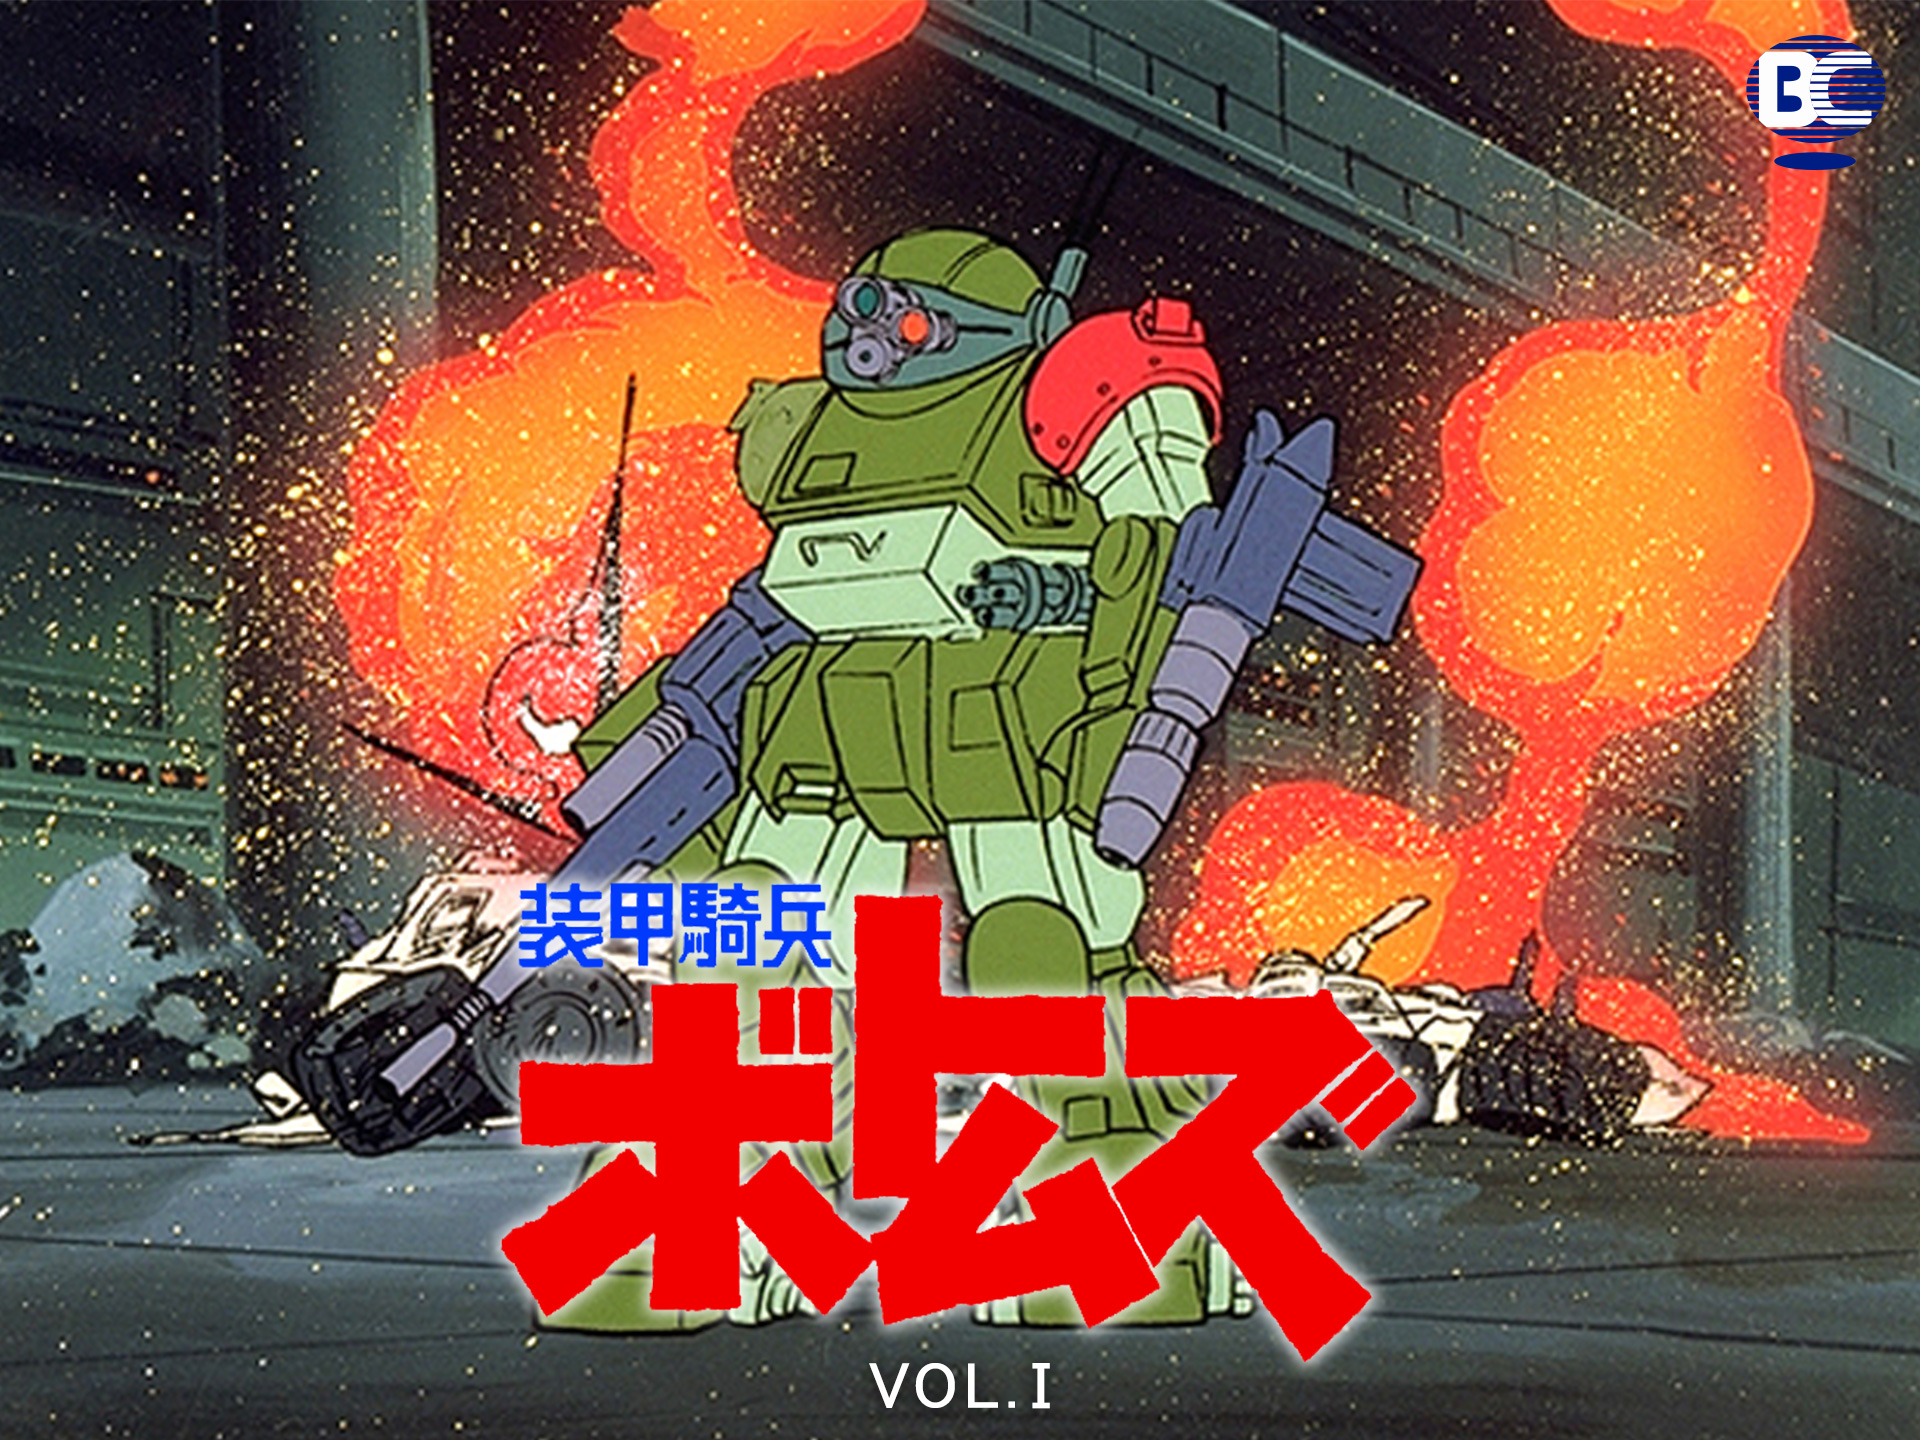 アニメ 装甲騎兵ボトムズ Vol I の動画 初月無料 動画配信サービスのビデオマーケット